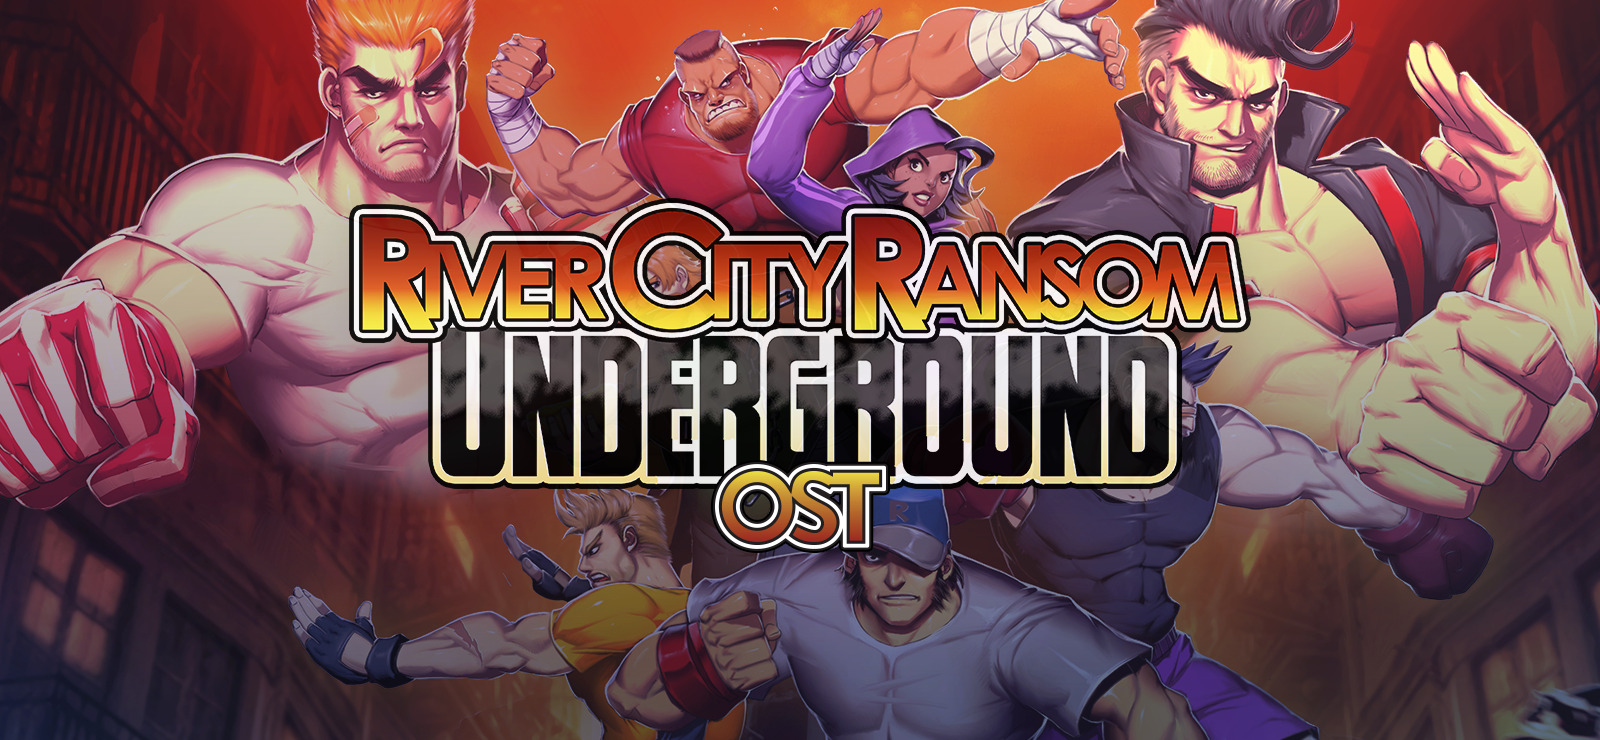 river city ransom underground otis